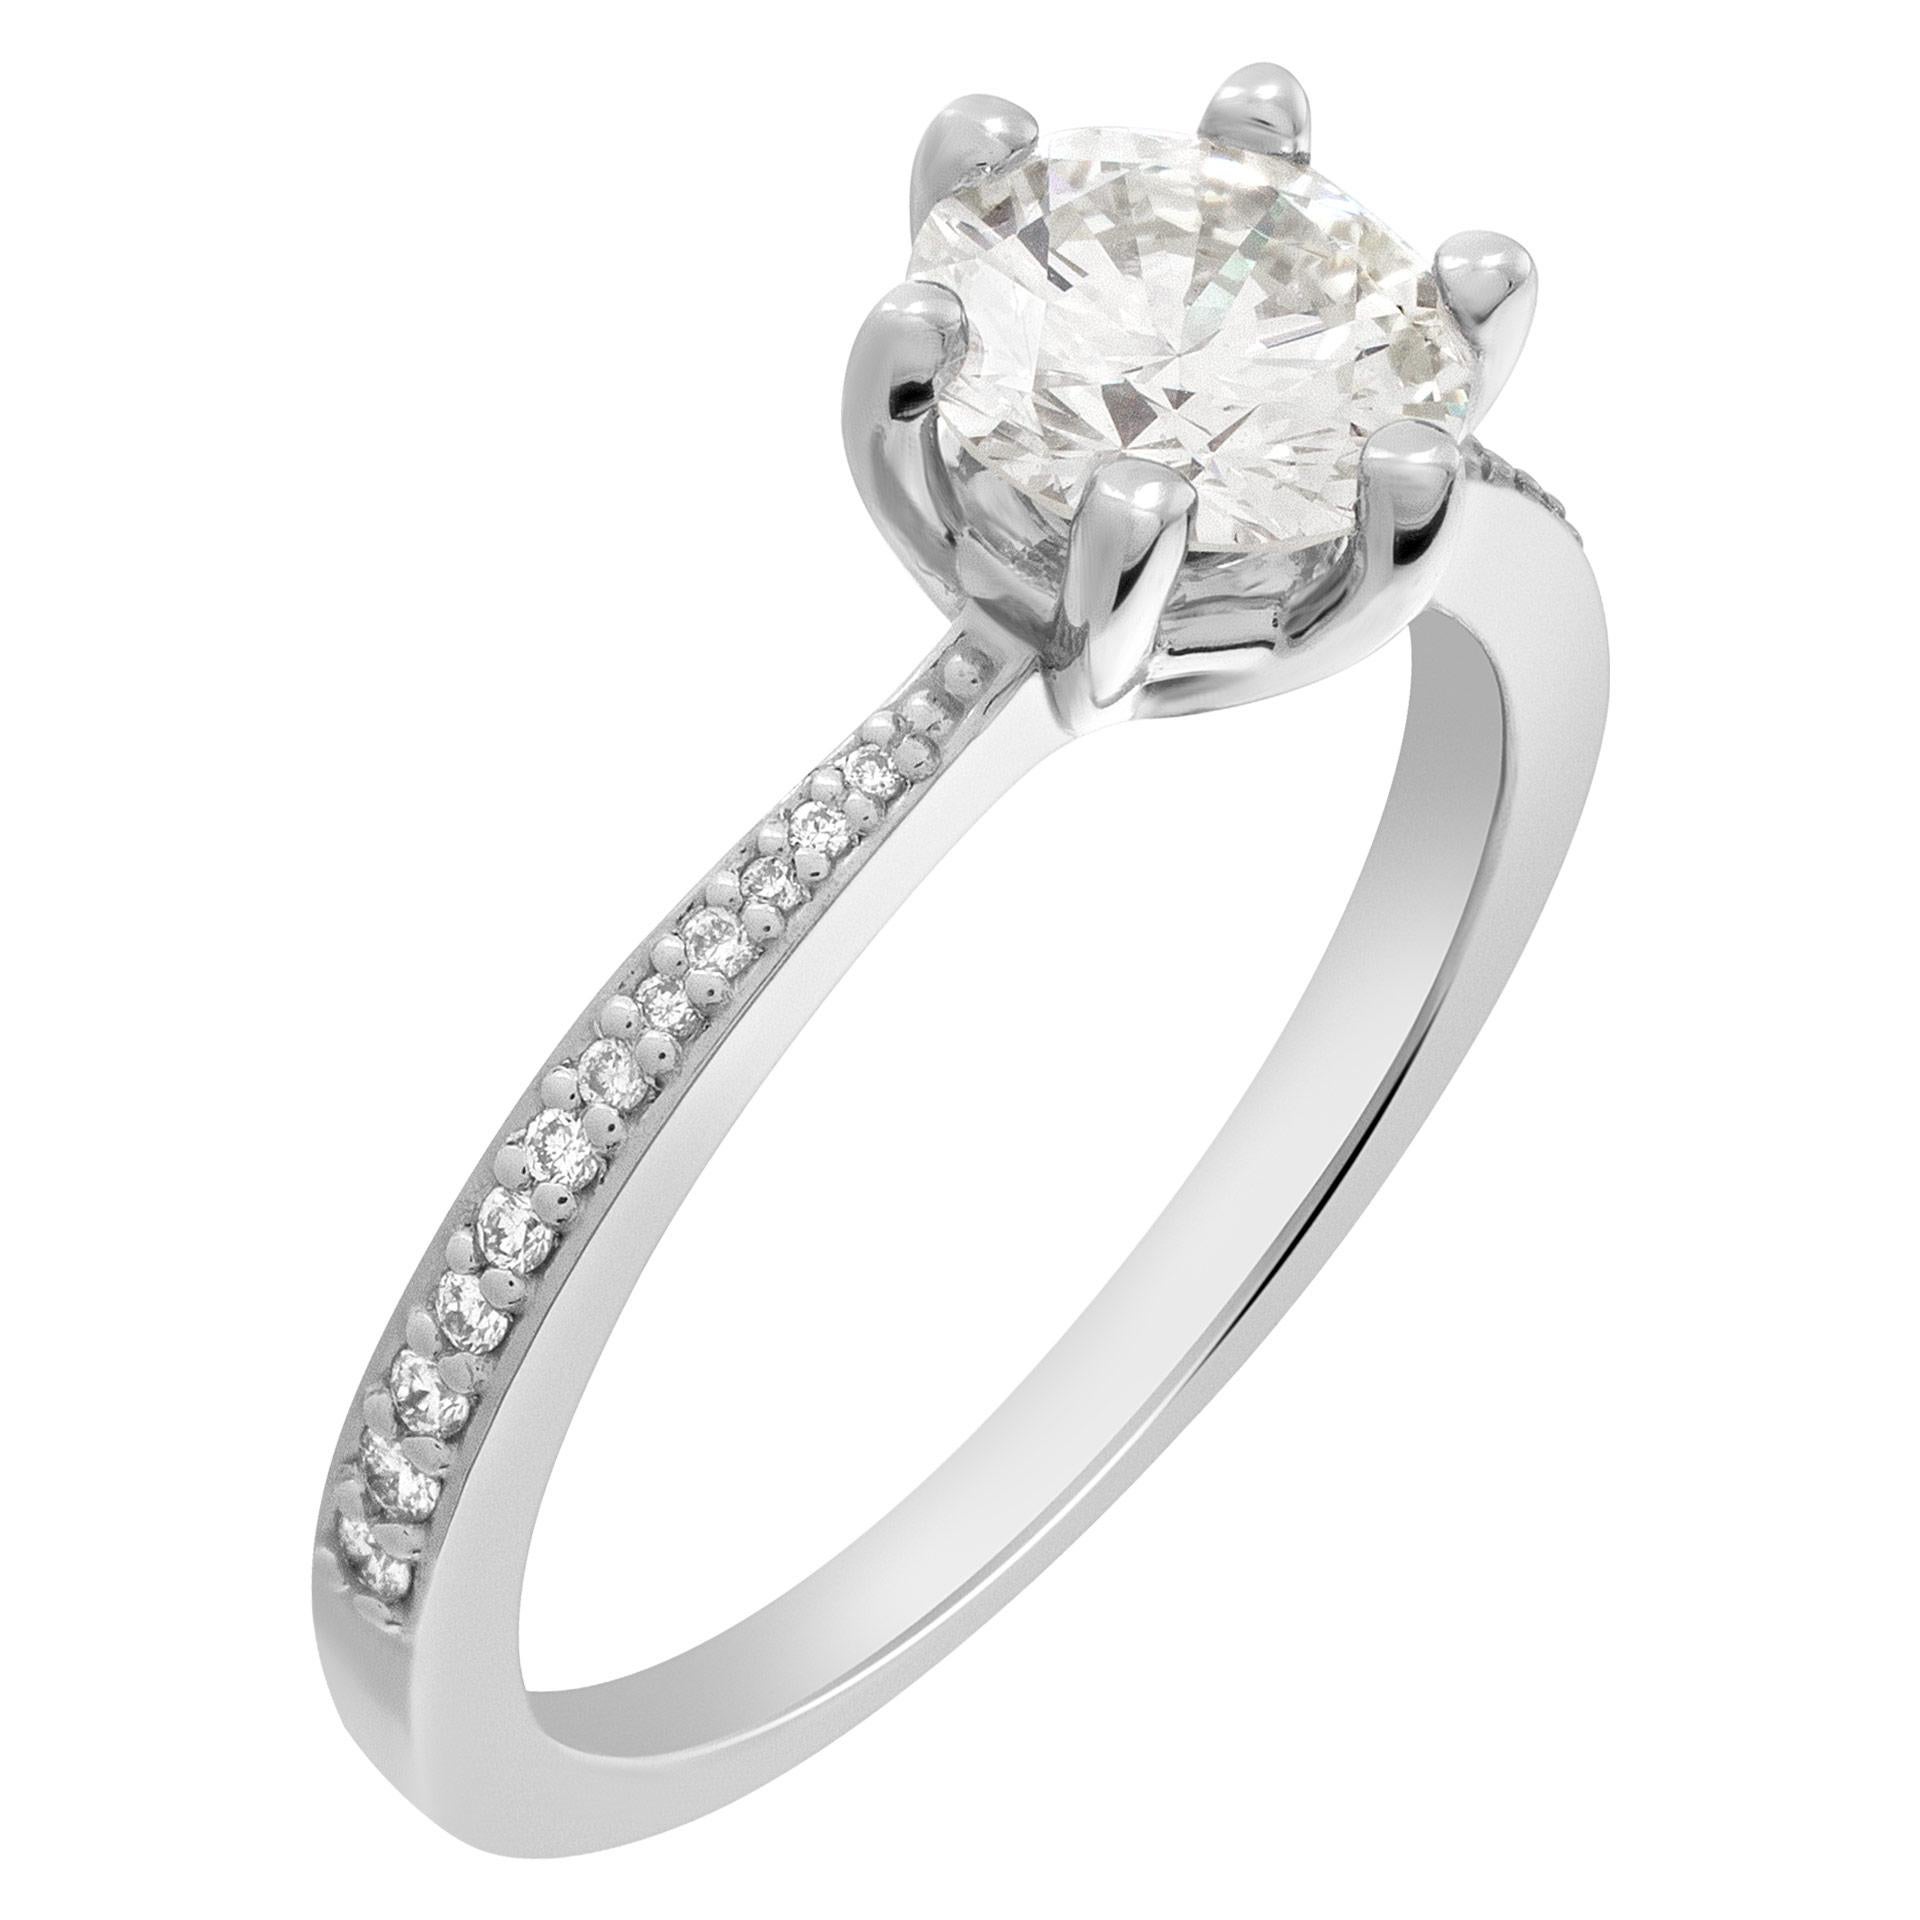 GIA-zertifizierter runder Diamant im Brillantschliff  1.ring mit 12 Karat (Farbe M, Reinheit VS1) in einer Fassung aus 14 Karat Weißgold mit sechs Zacken und halbgefassten Diamanten. Größe 7.  Dieser GIA-zertifizierte Ring hat derzeit die Größe